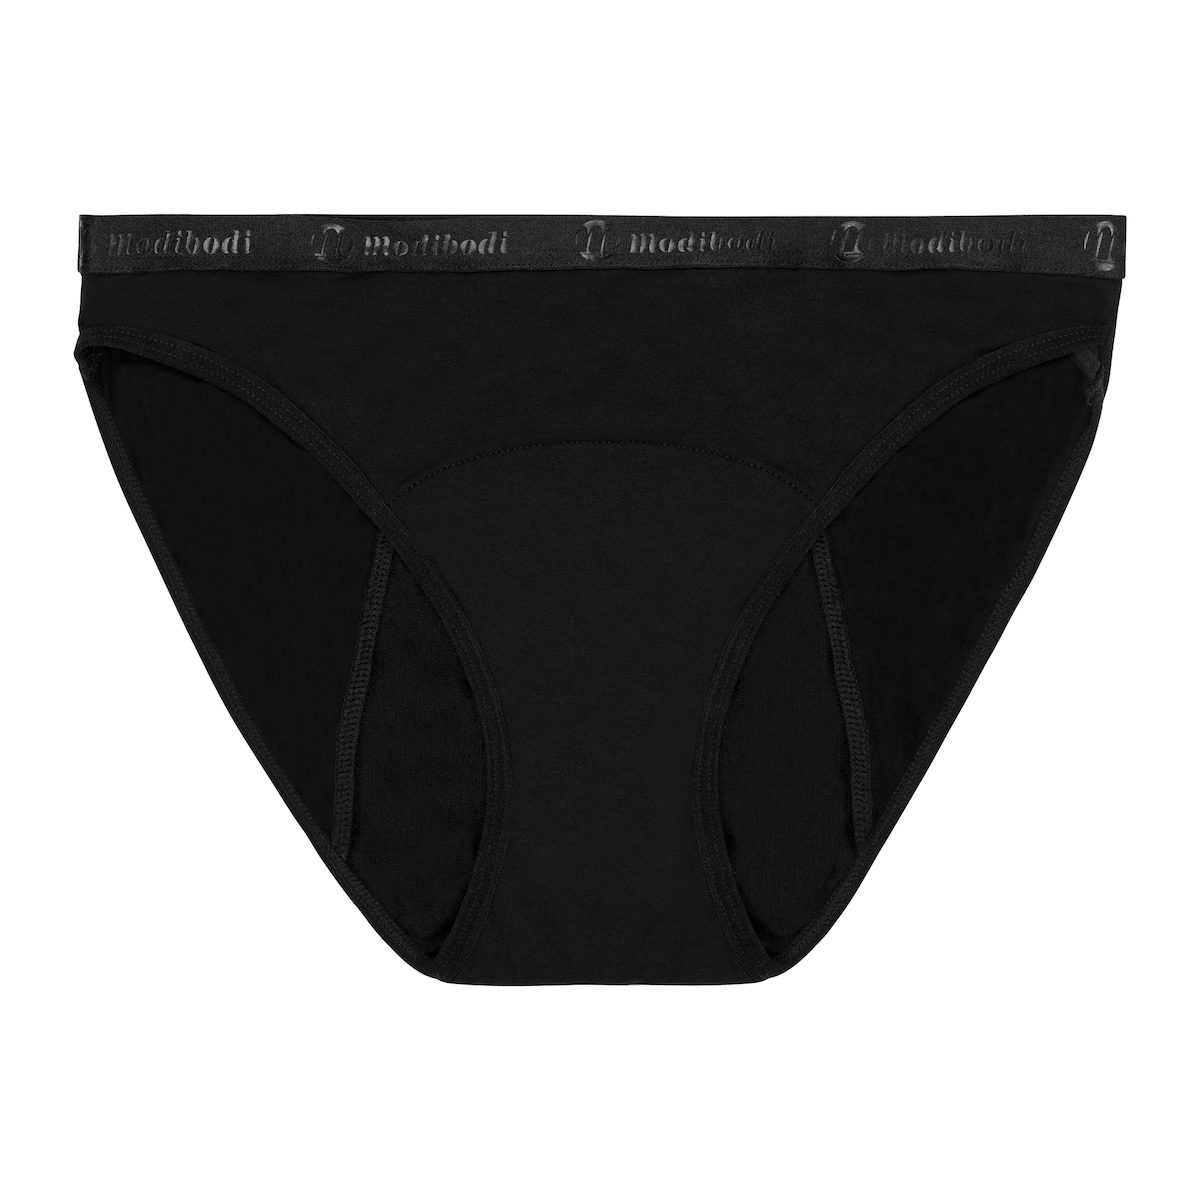 Modibodi Classic Bikini Period Underwear Heavy-Overnight Black 16/XL